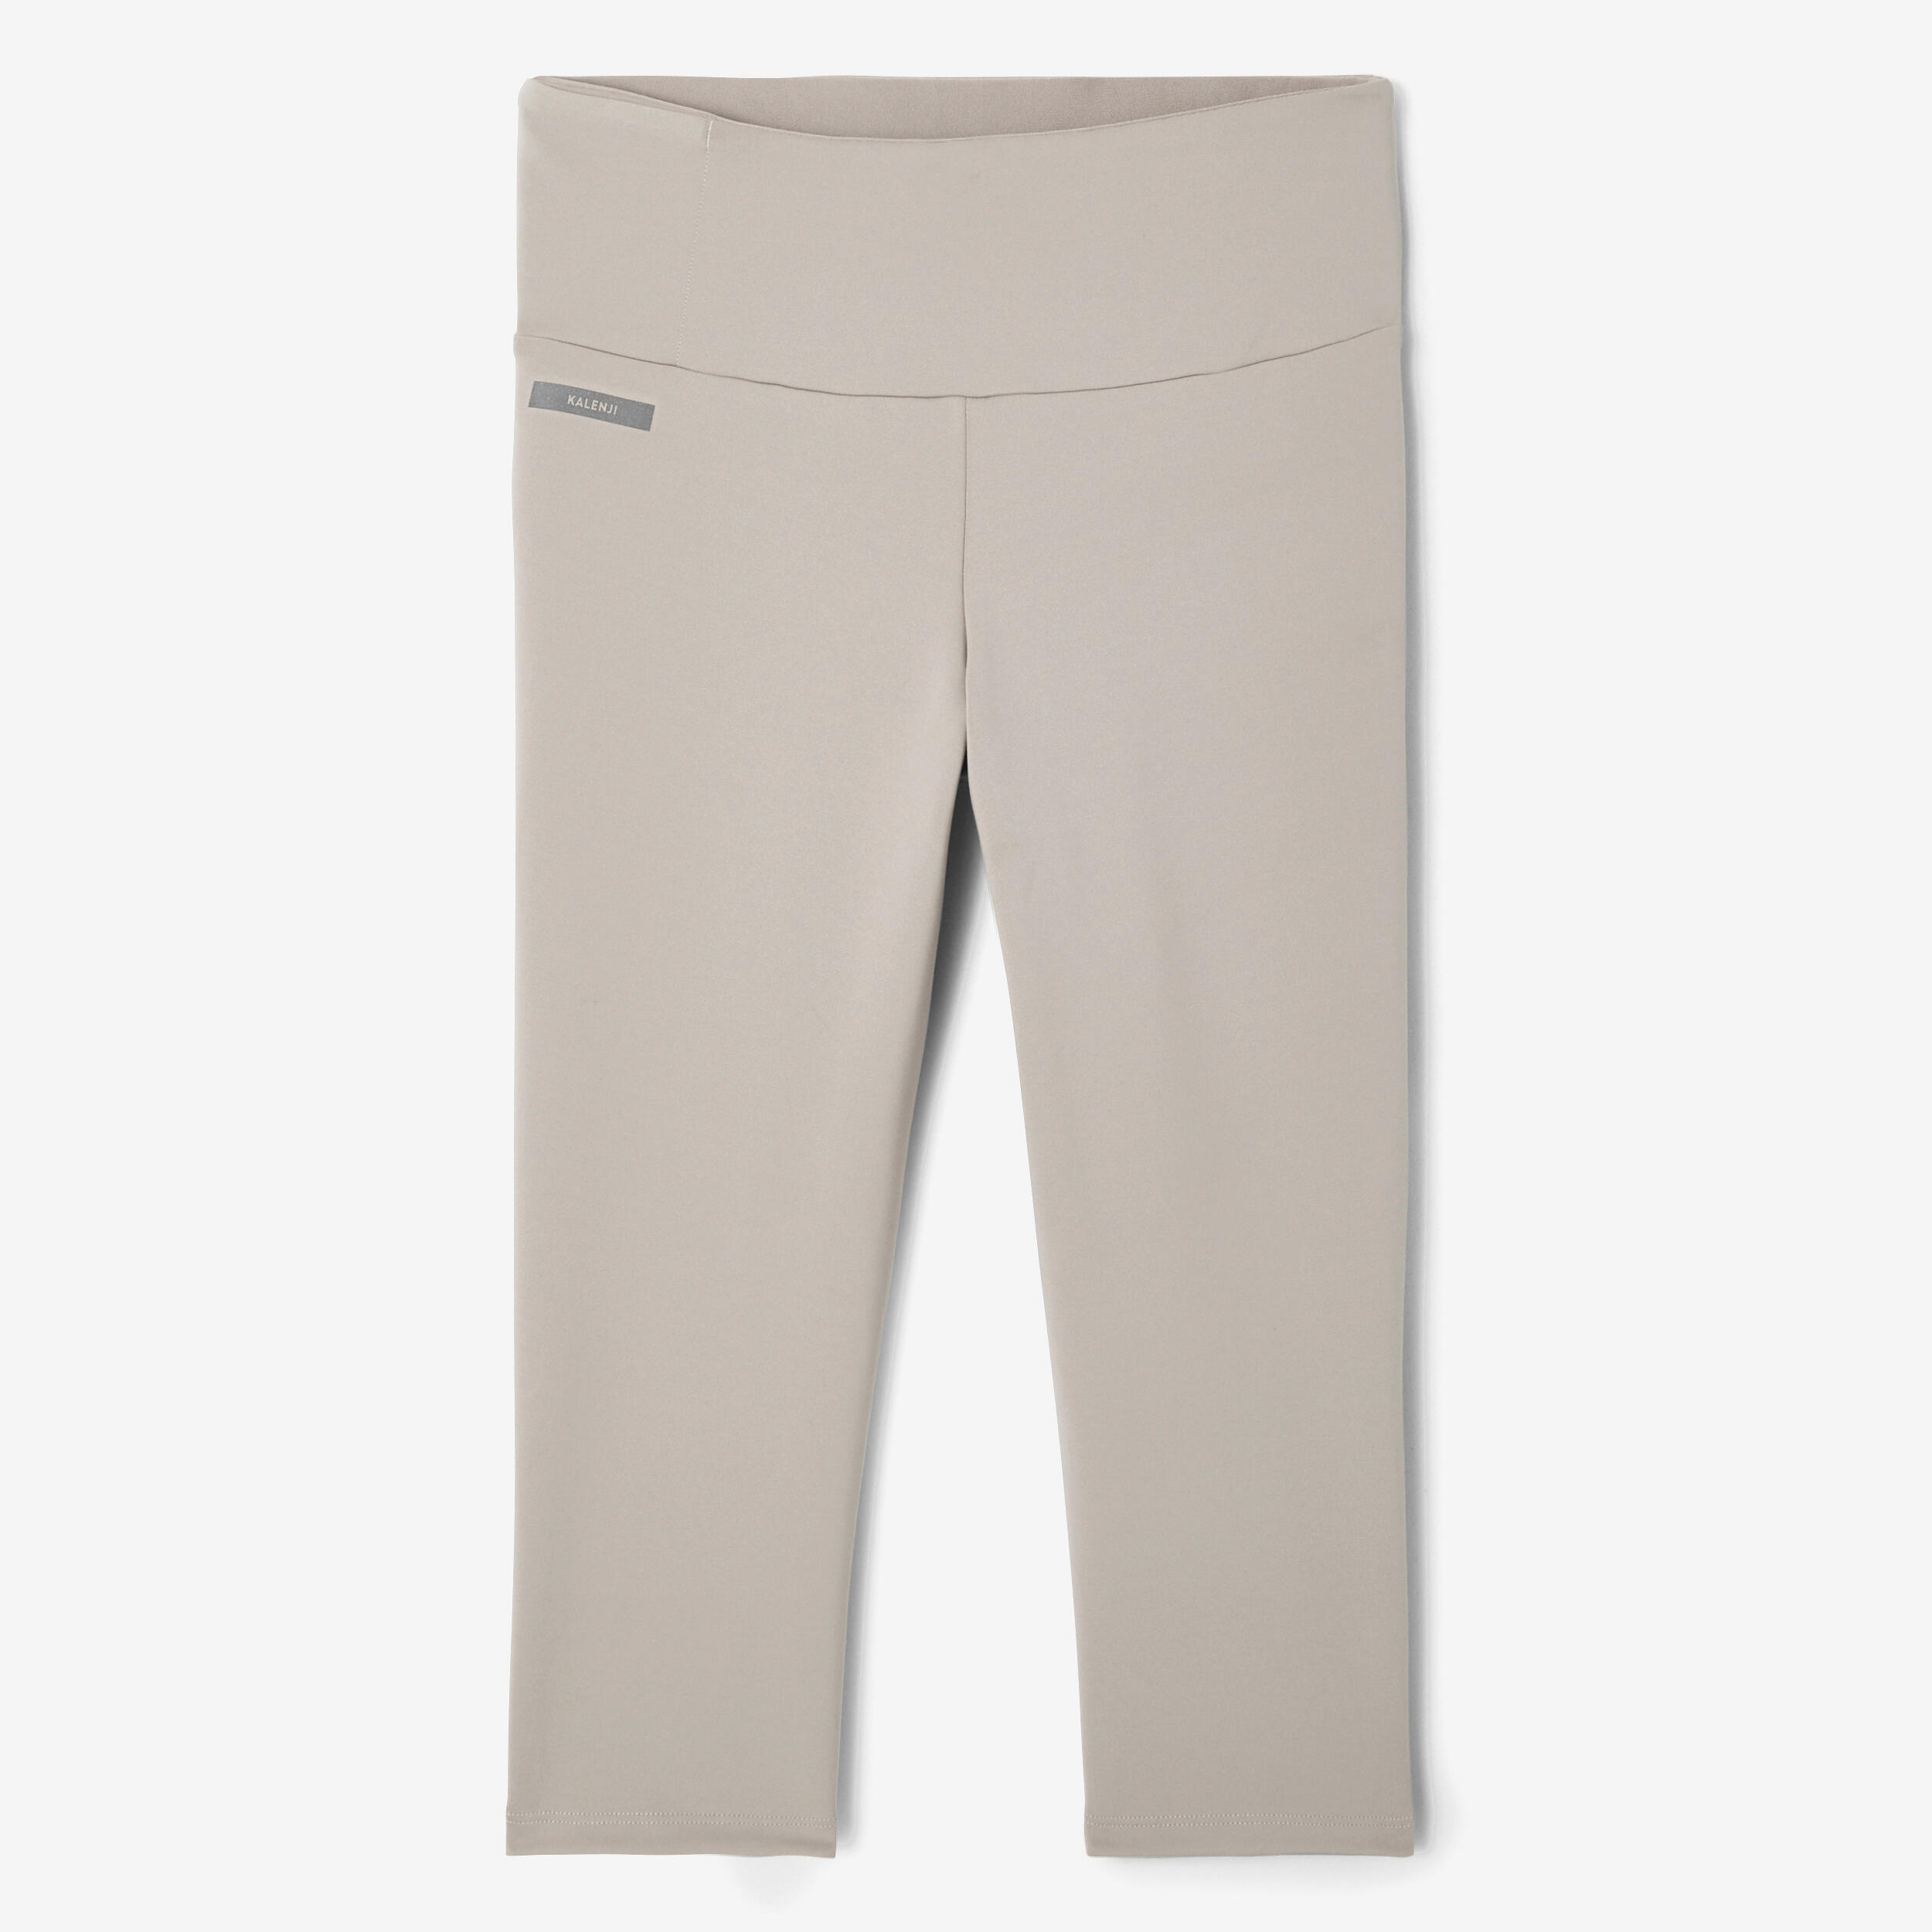 Women's short running leggings Support - beige 8/8